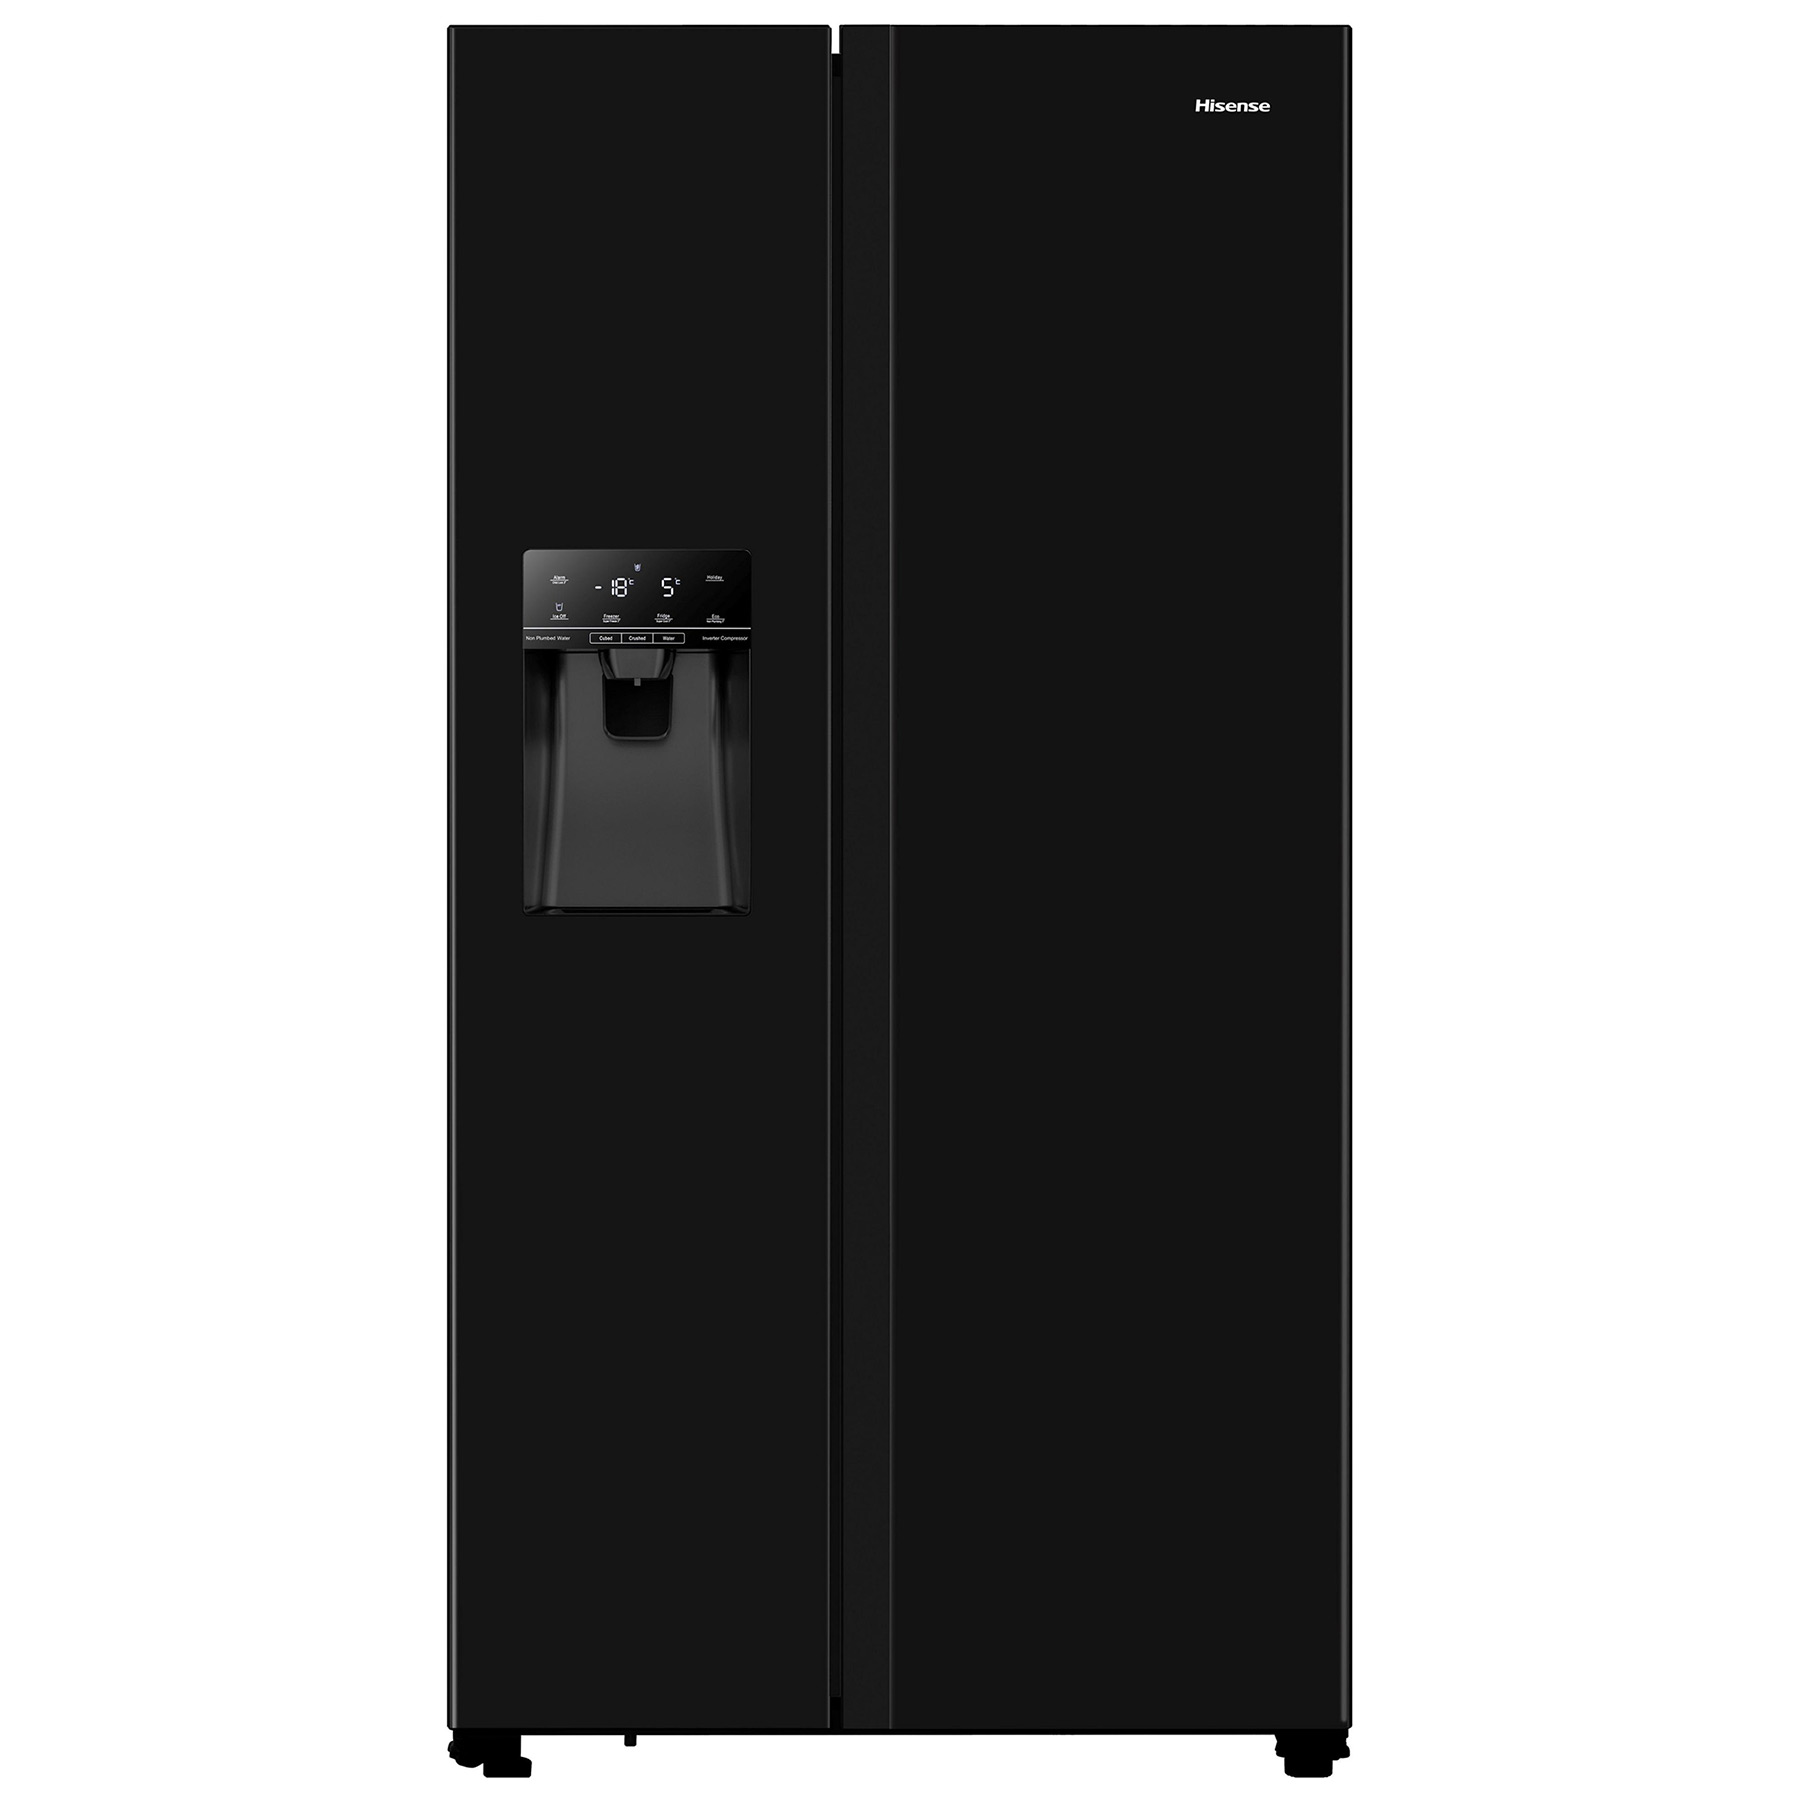 Hisense RS694N4TBE American Fridge Freezer in Black NP I W E Rated